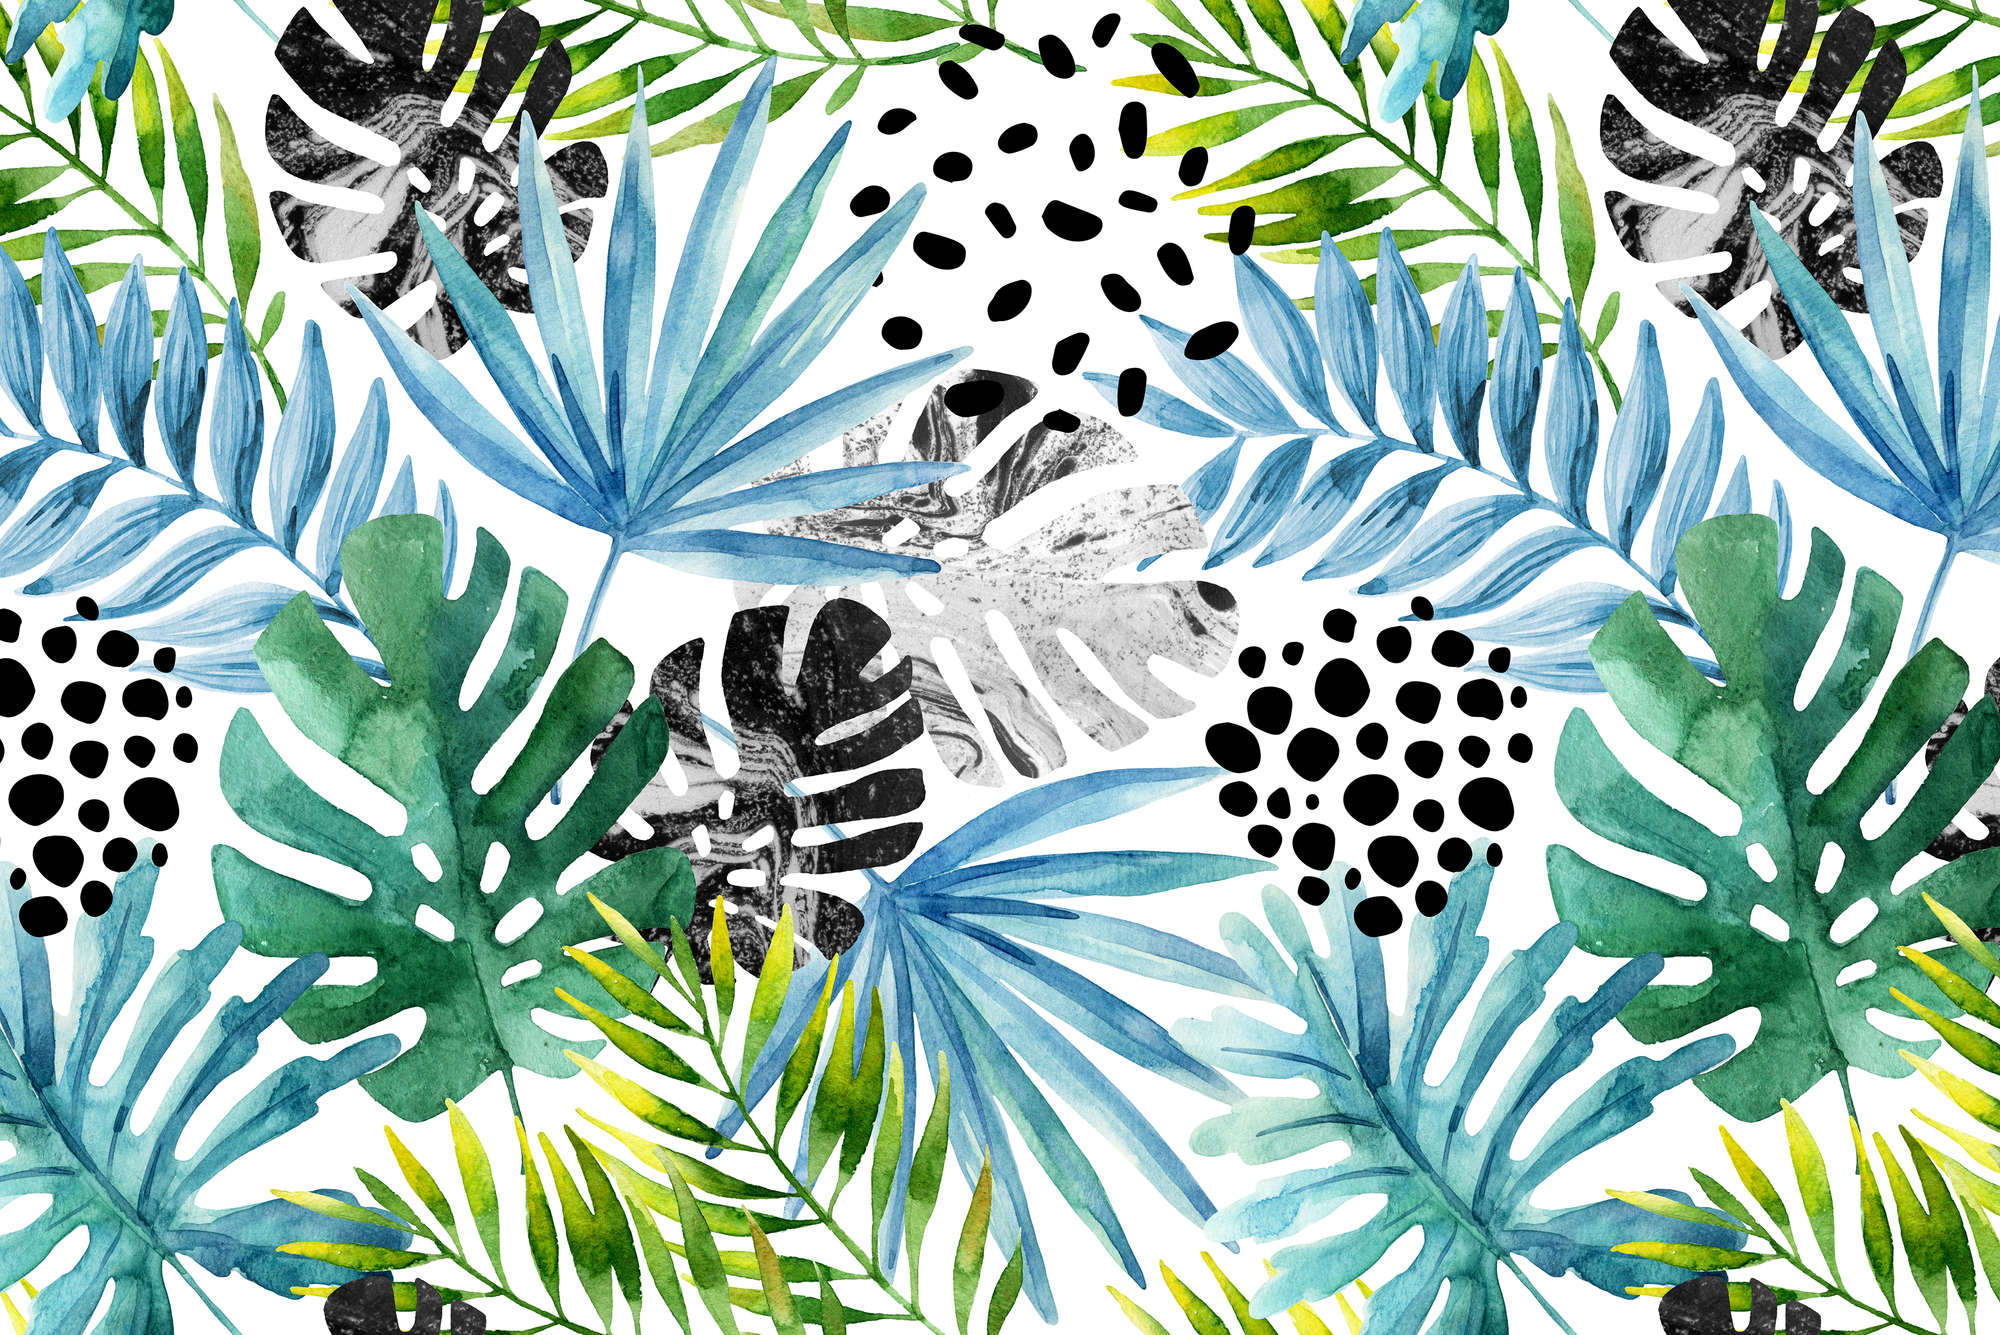             Grafisch behang jungle planten kleurrijk op parelmoer glad vlies
        